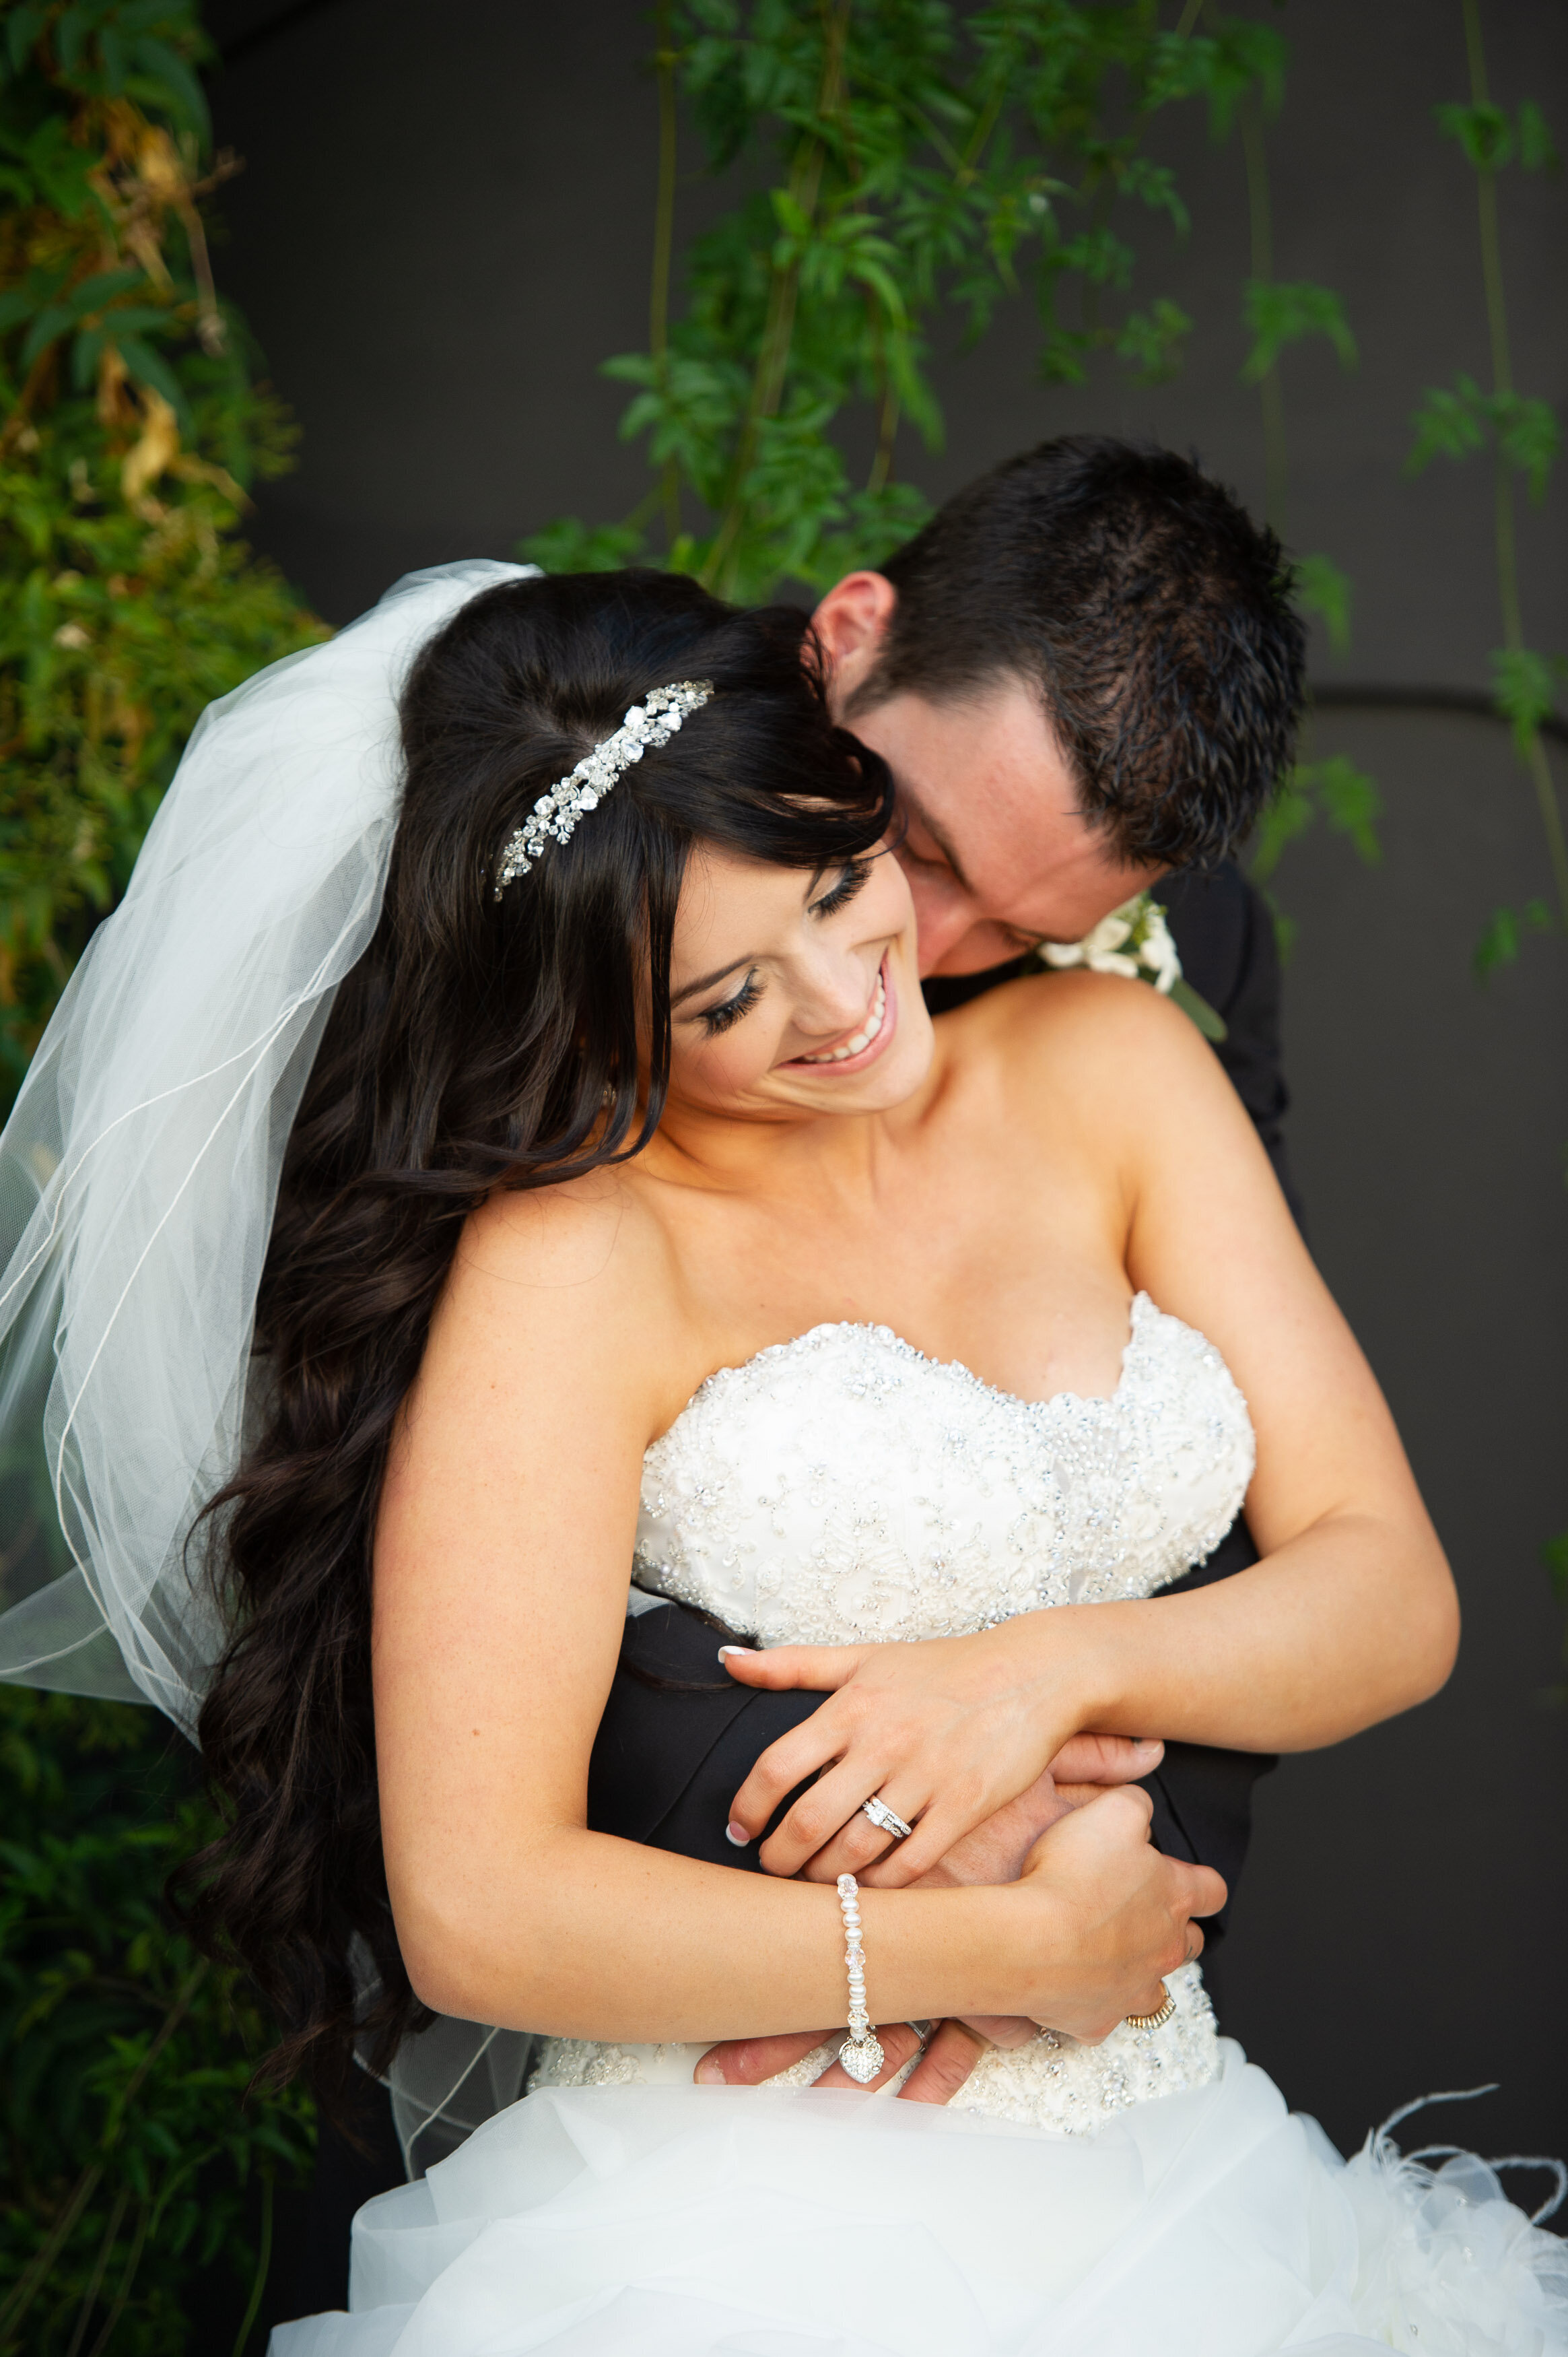 bride-groom-intimate-hug-